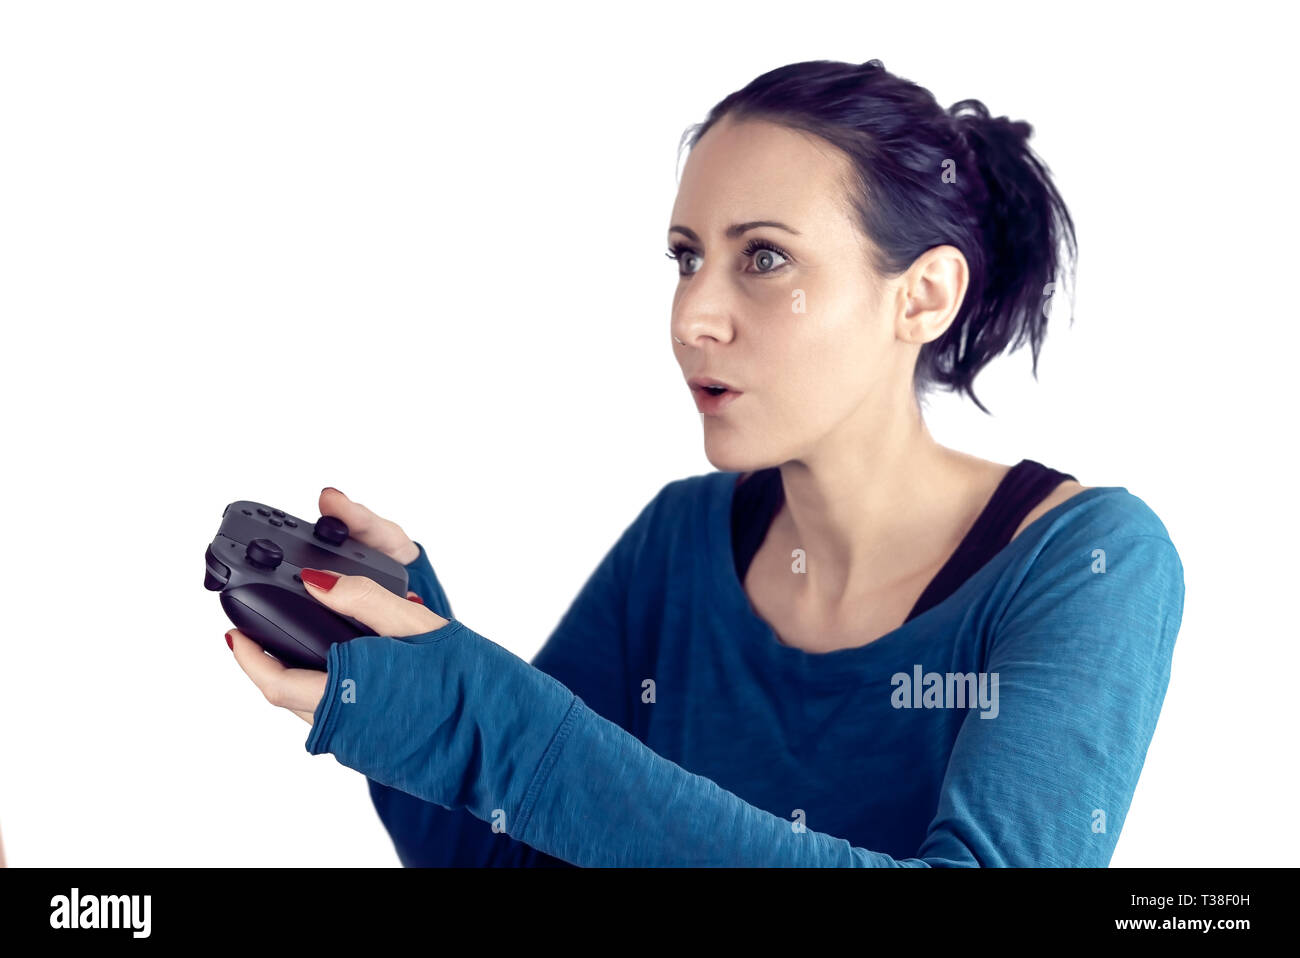 Giovane donna con il maglione blu la riproduzione del video gioco su wireless controller di gioco con un concentrato di espressioni facciali isolato su bianco Foto Stock